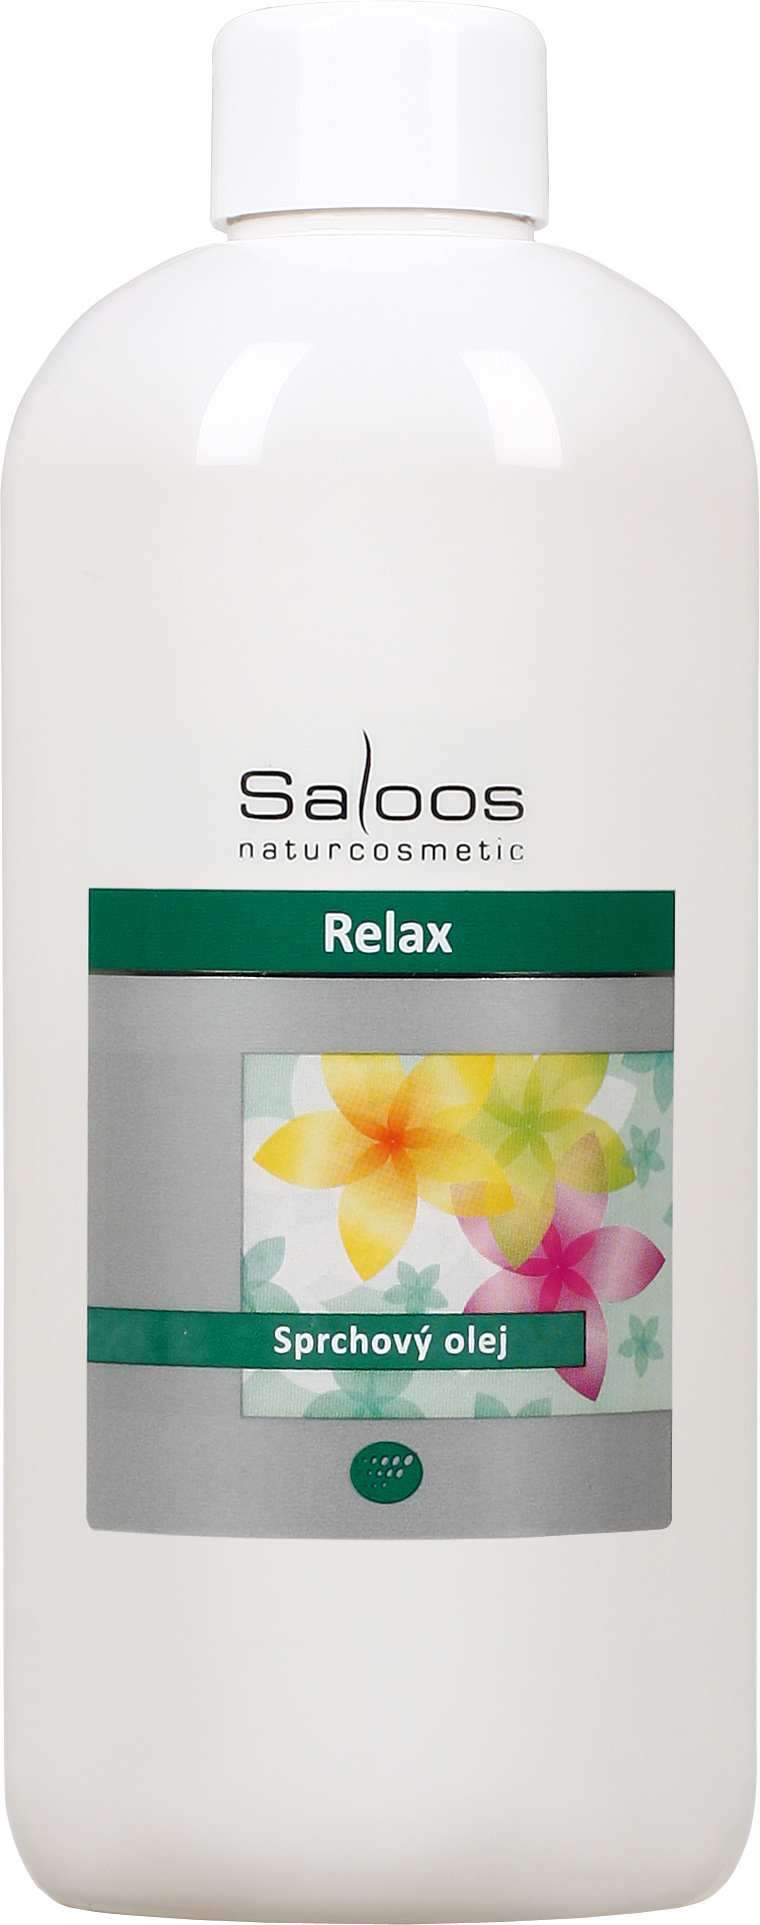 Saloos Relax - sprchový olej Balení: 250 ml